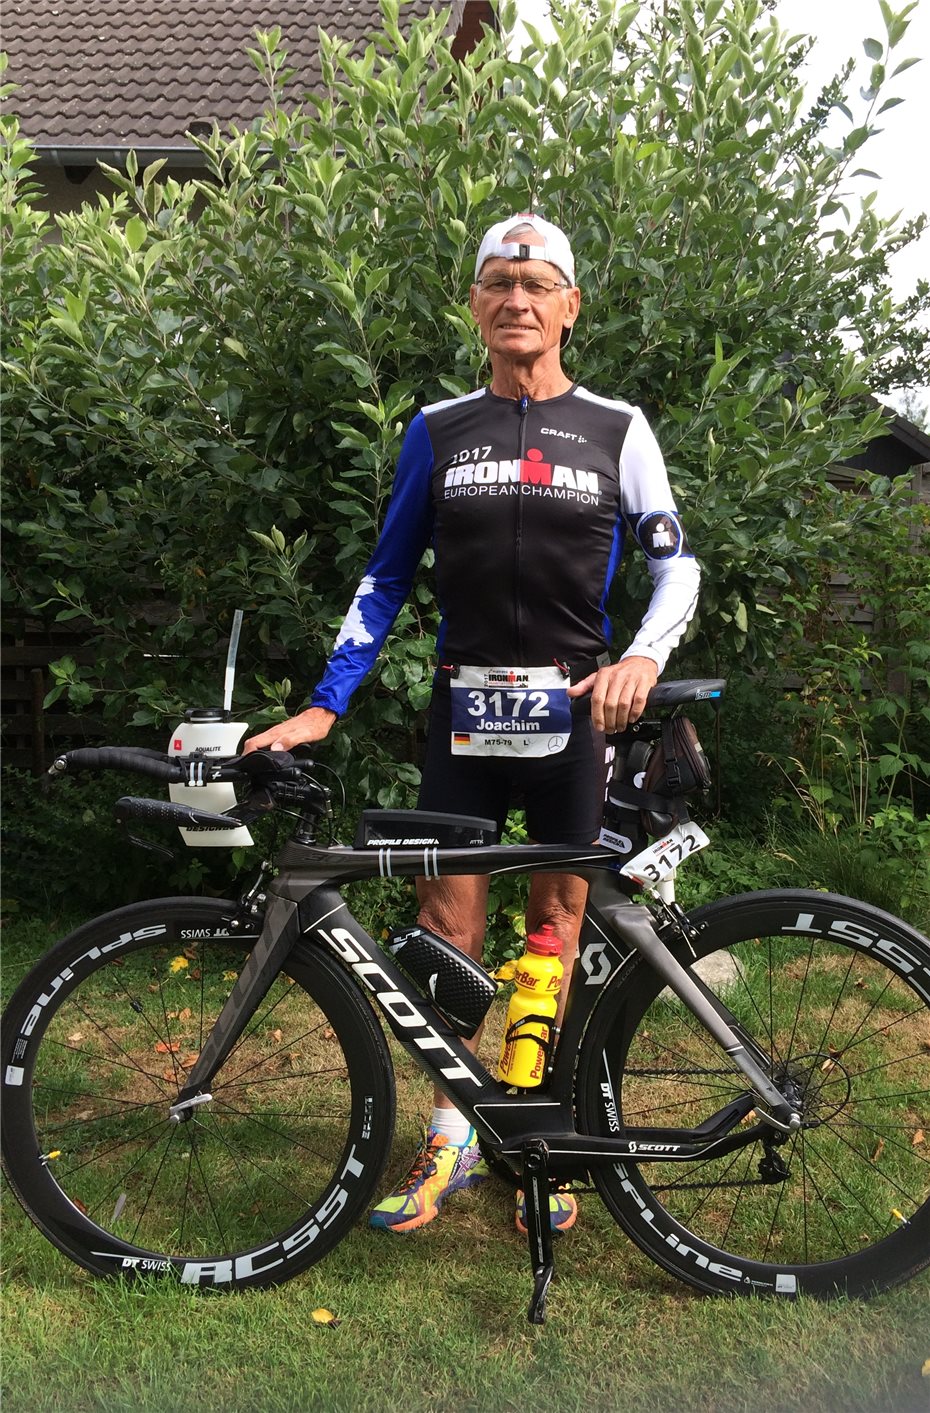 Mit 77 Jahren zum
Ironman-Europameister gekürt